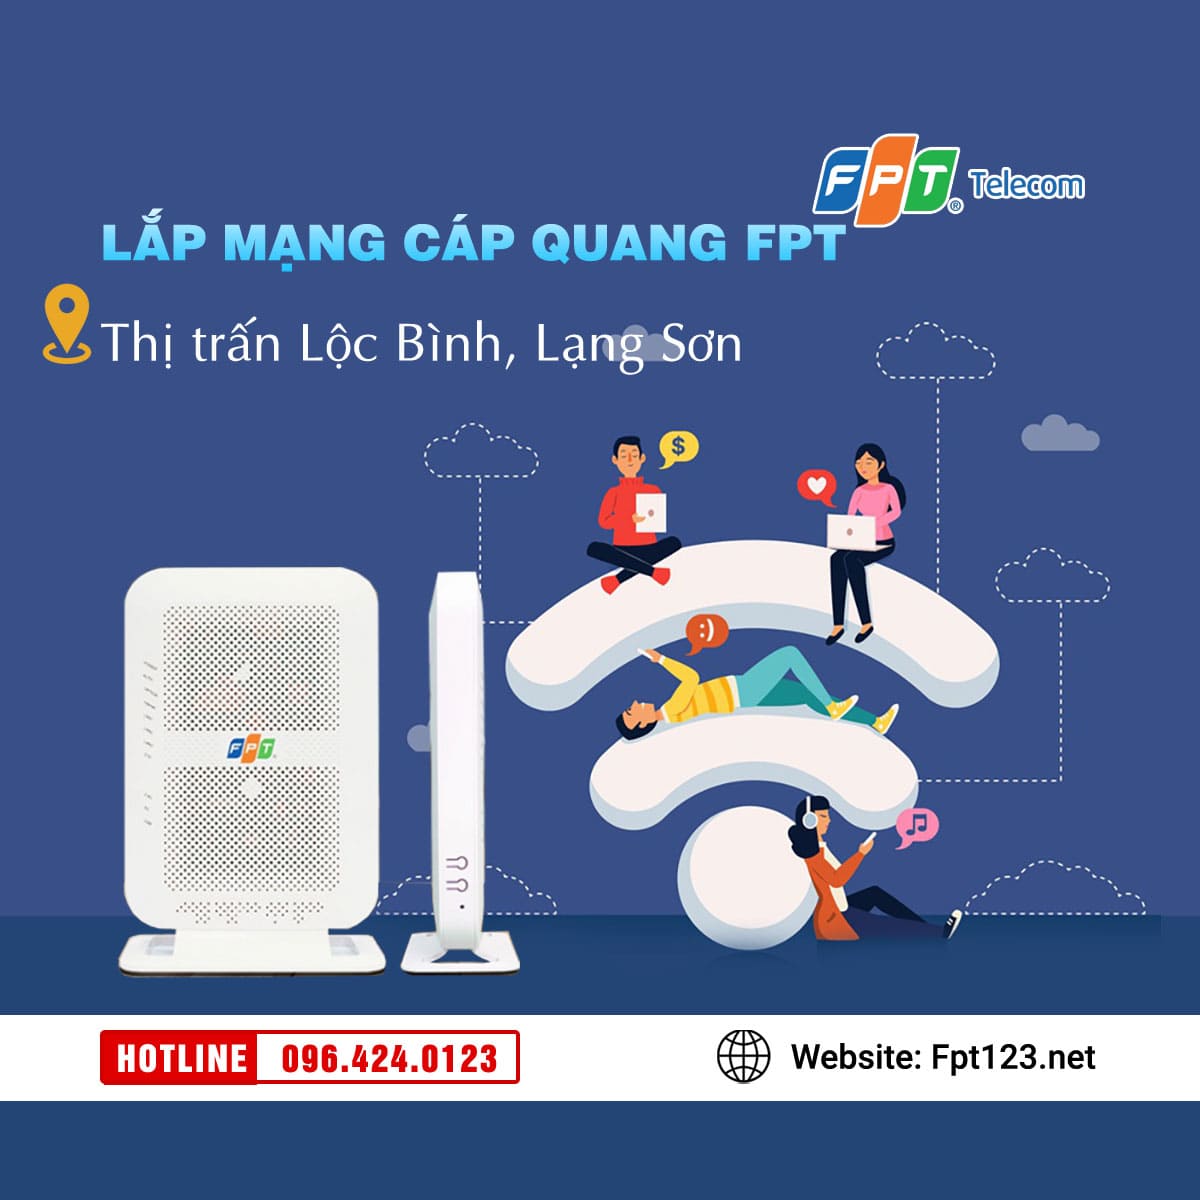 Lắp mạng cáp quang FPT ở thị trấn Lộc Bình, Lạng Sơn